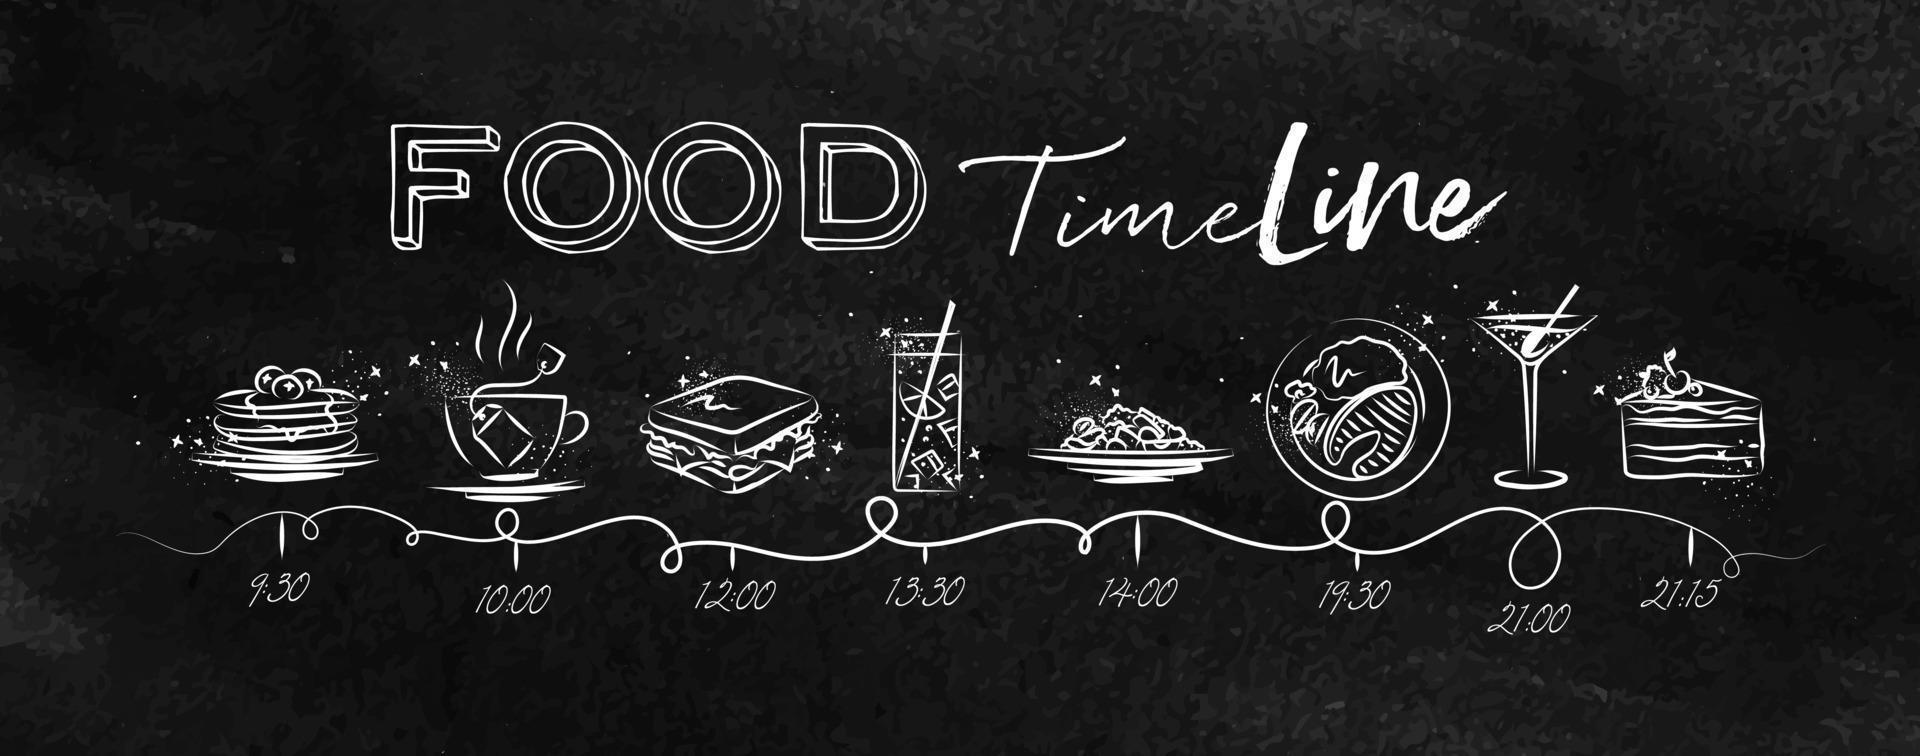 tijdlijn op voedselthema geïllustreerde tijd van maaltijd en voedselpictogrammen die met krijt op bord trekken vector